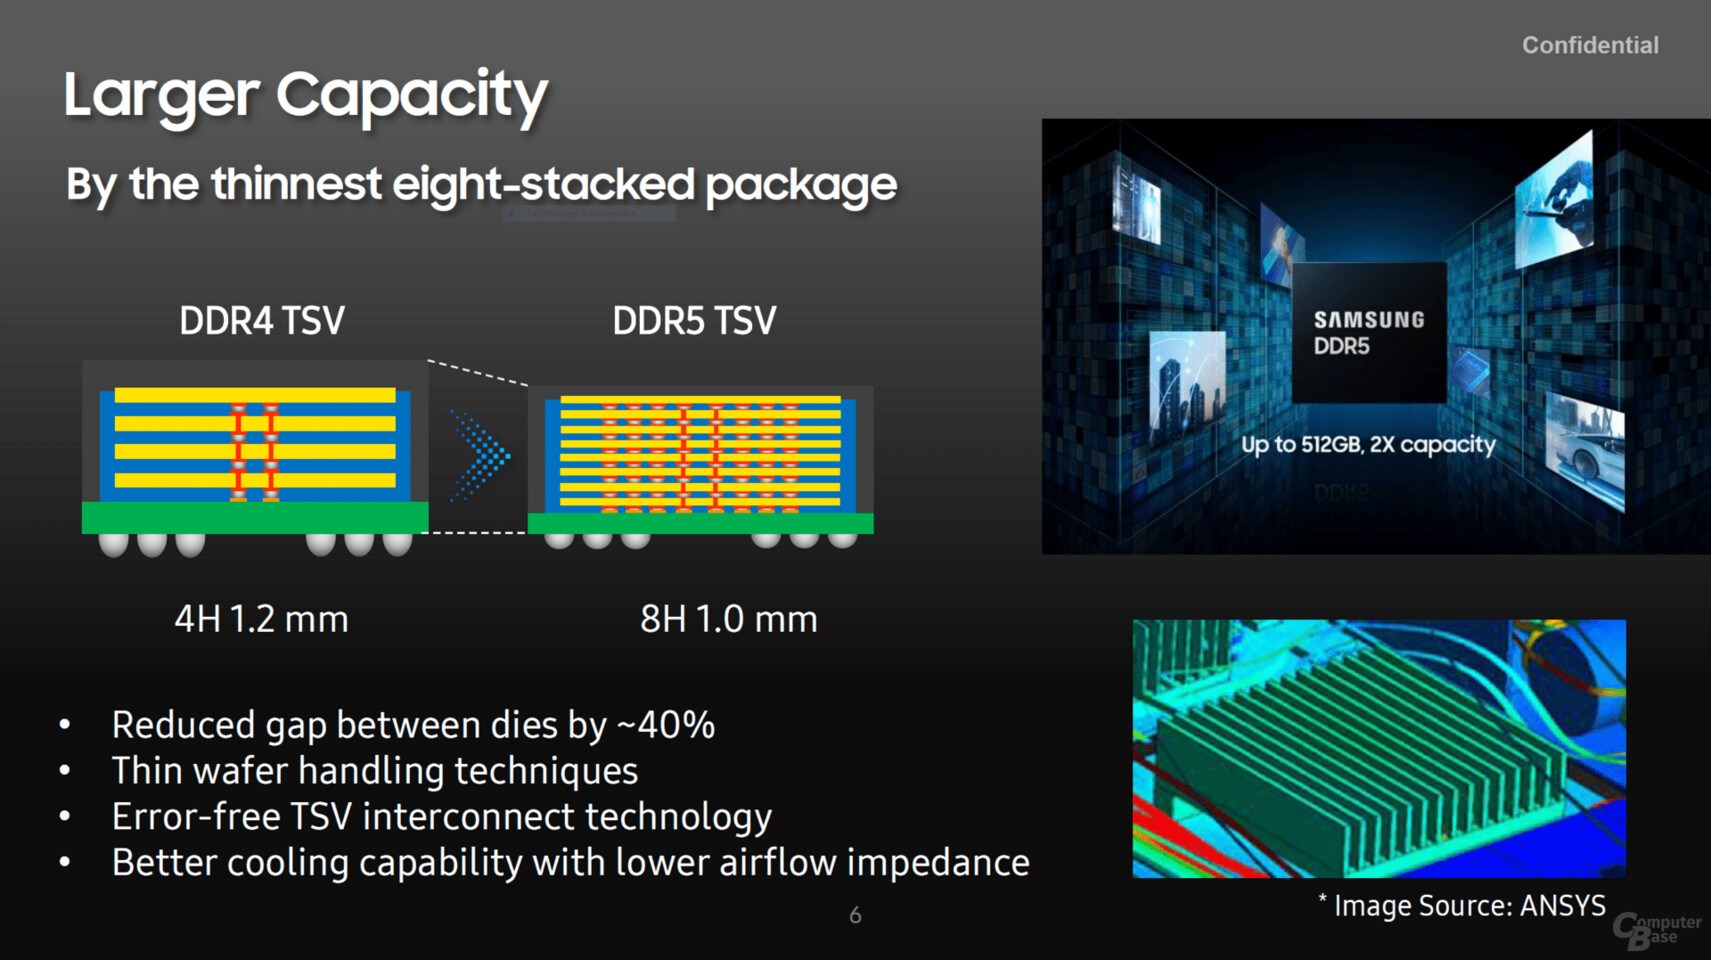 Samsung'un yeni DDR5 Ramleri 512 GB kapasite ve 2 kat hız sunacak